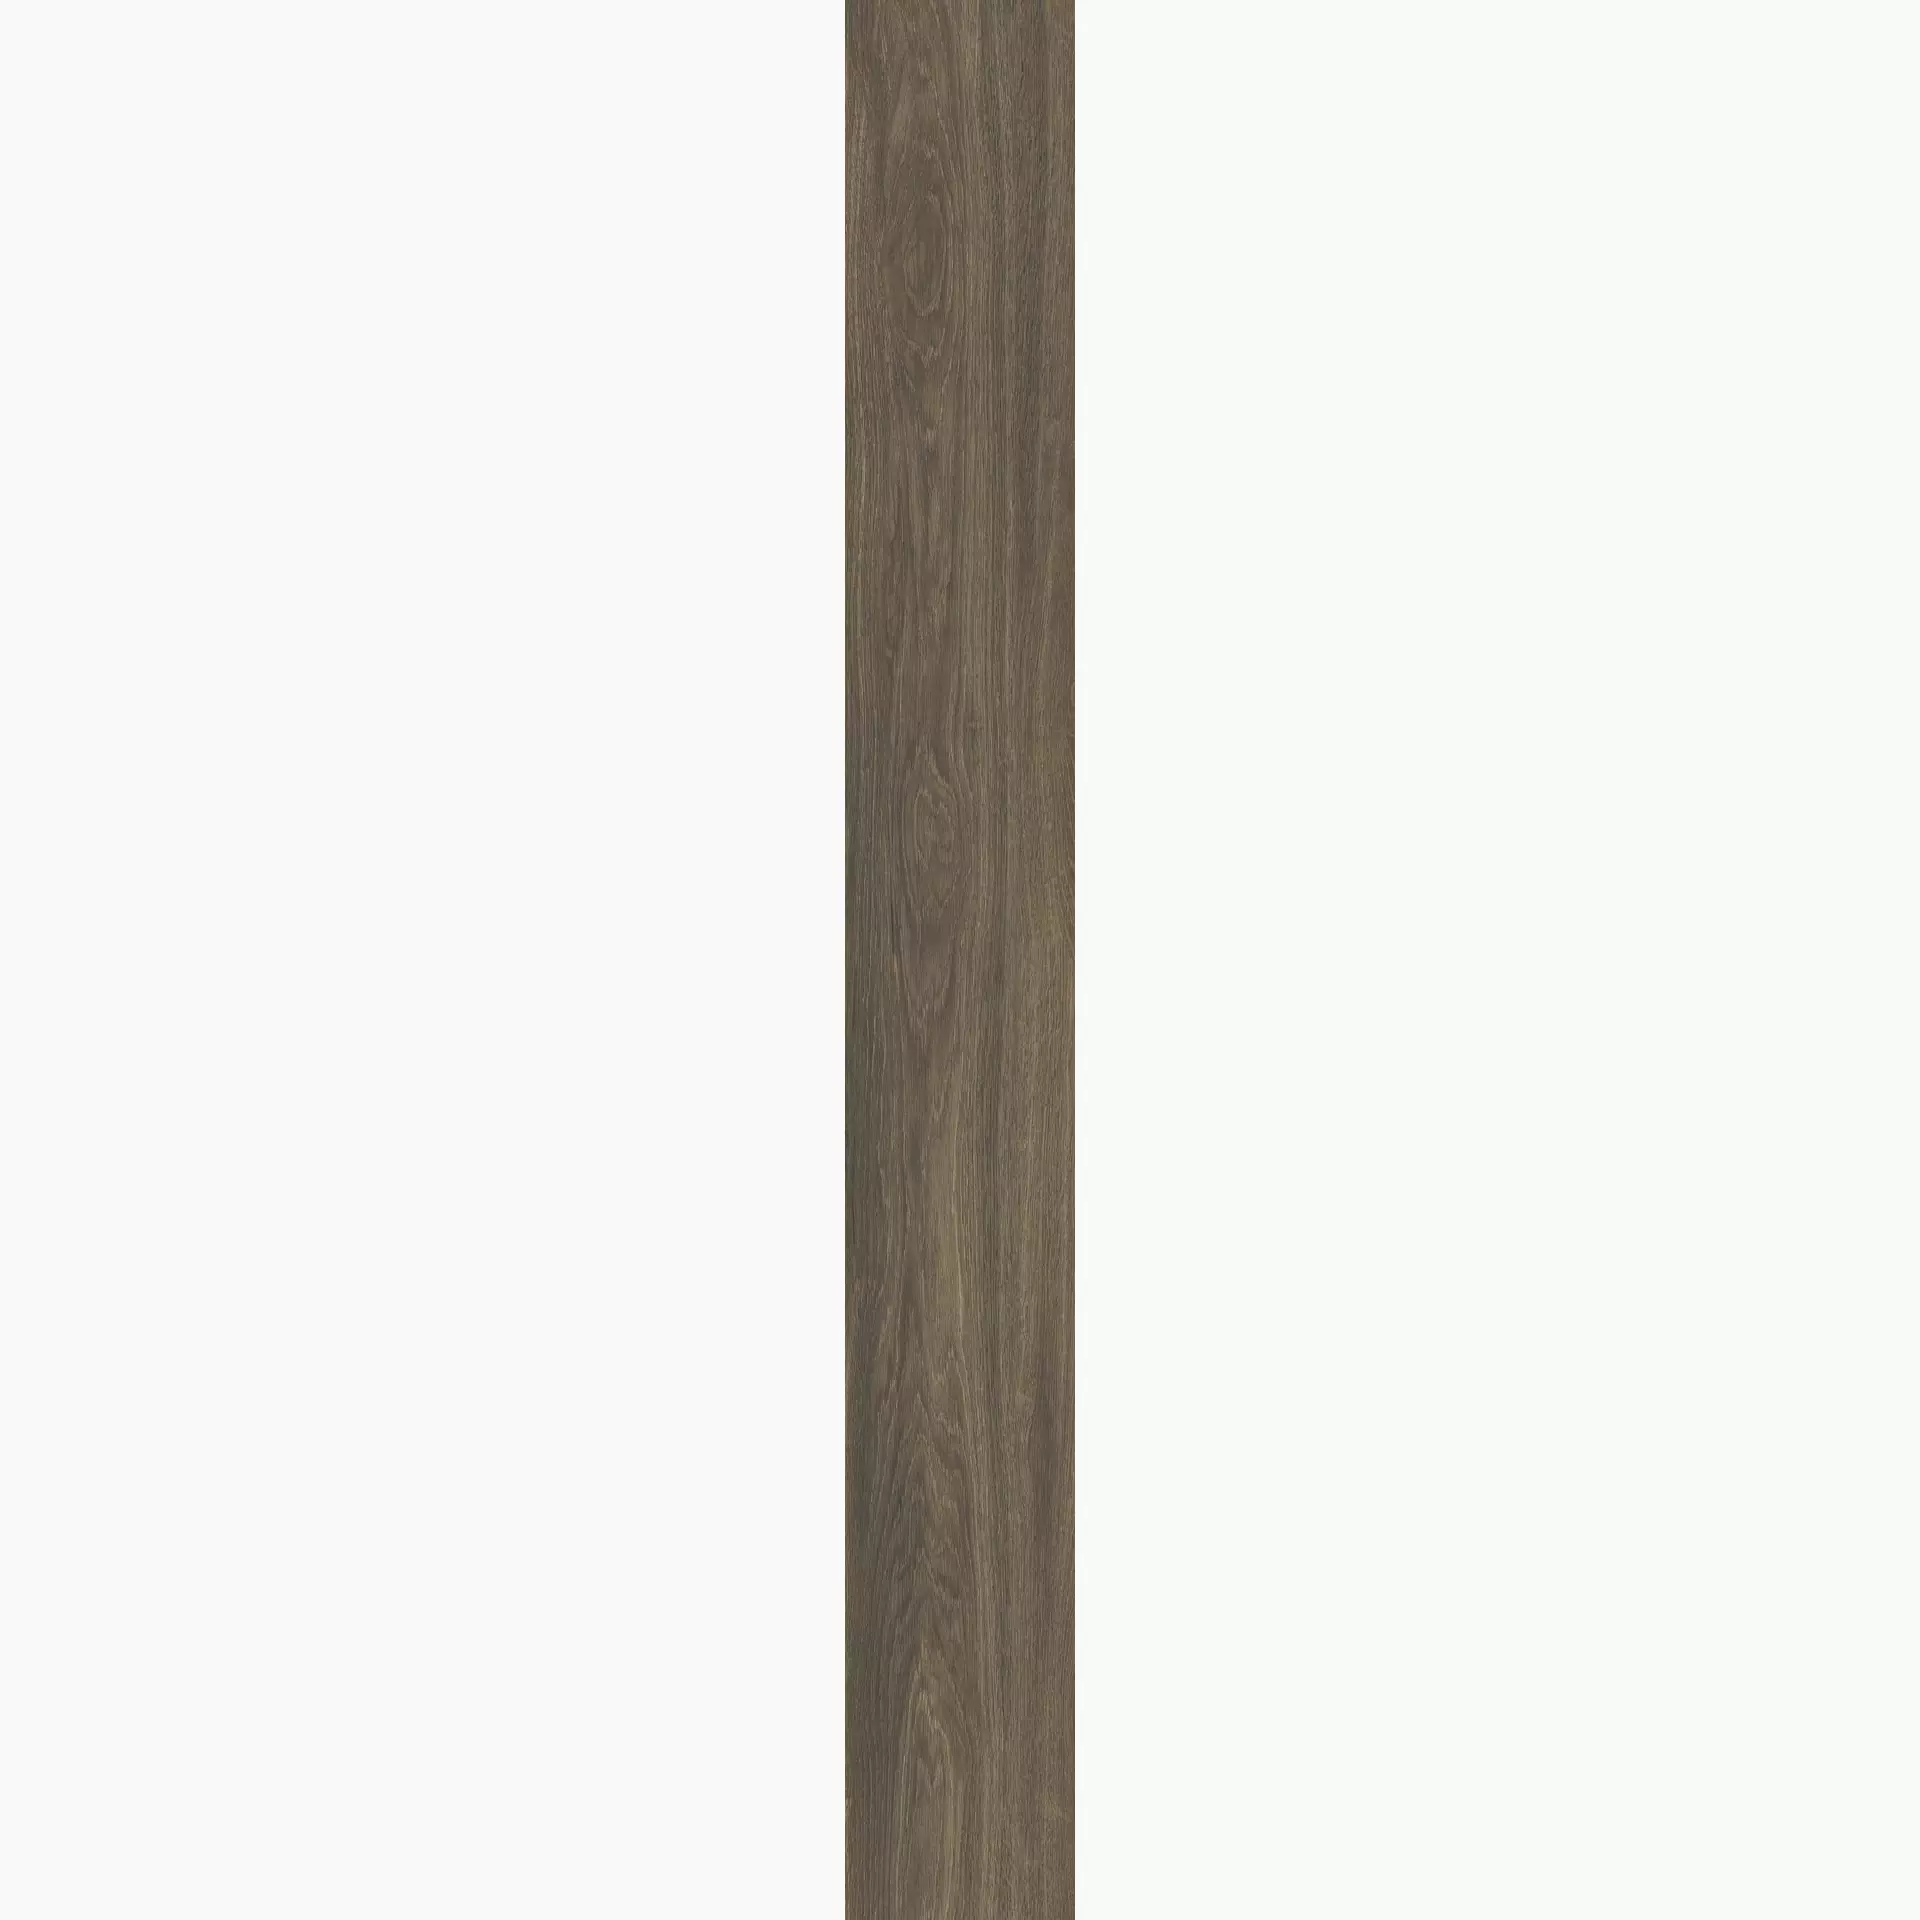 Casalgrande Planks Bruno Naturale – Matt 10930086 30x240cm rectified 6mm